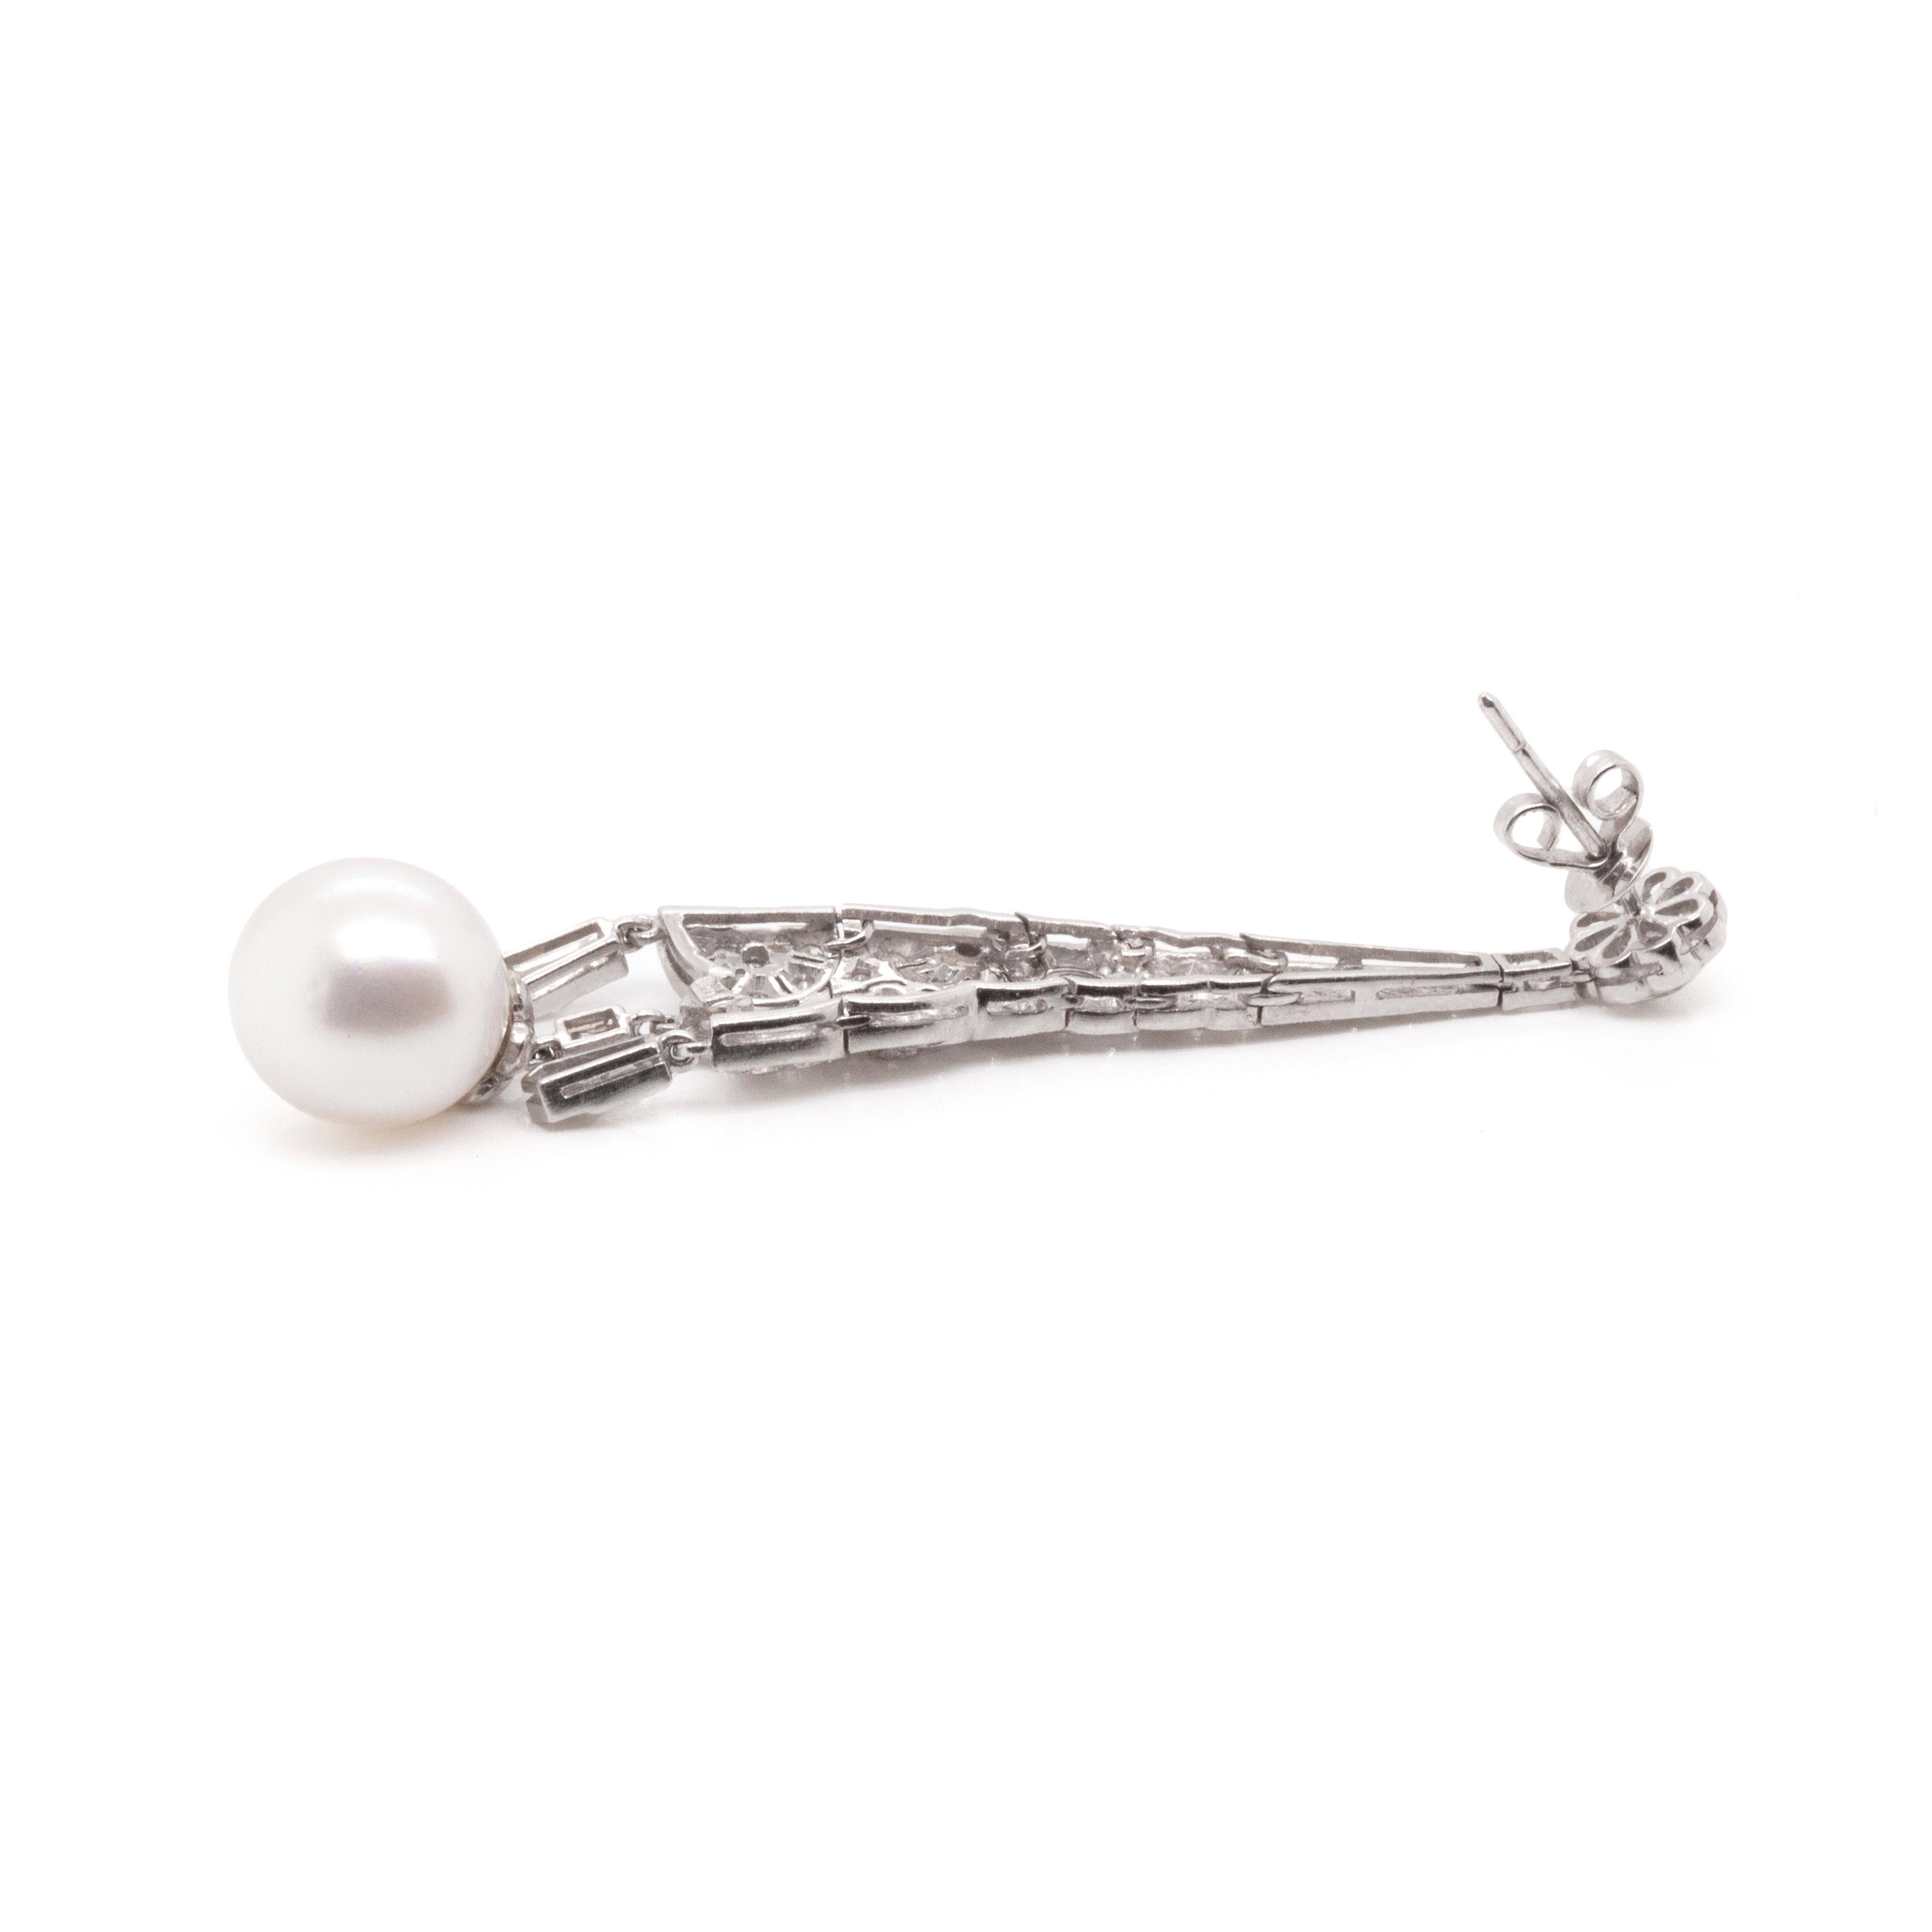 Ces magnifiques boucles d'oreilles pendantes en or blanc 18ct, diamants et perles sont la pièce d'apparat parfaite pour toute occasion spéciale.

D'une hauteur incroyable de 7 cm, ces magnifiques boucles d'oreilles sont serties d'environ trois